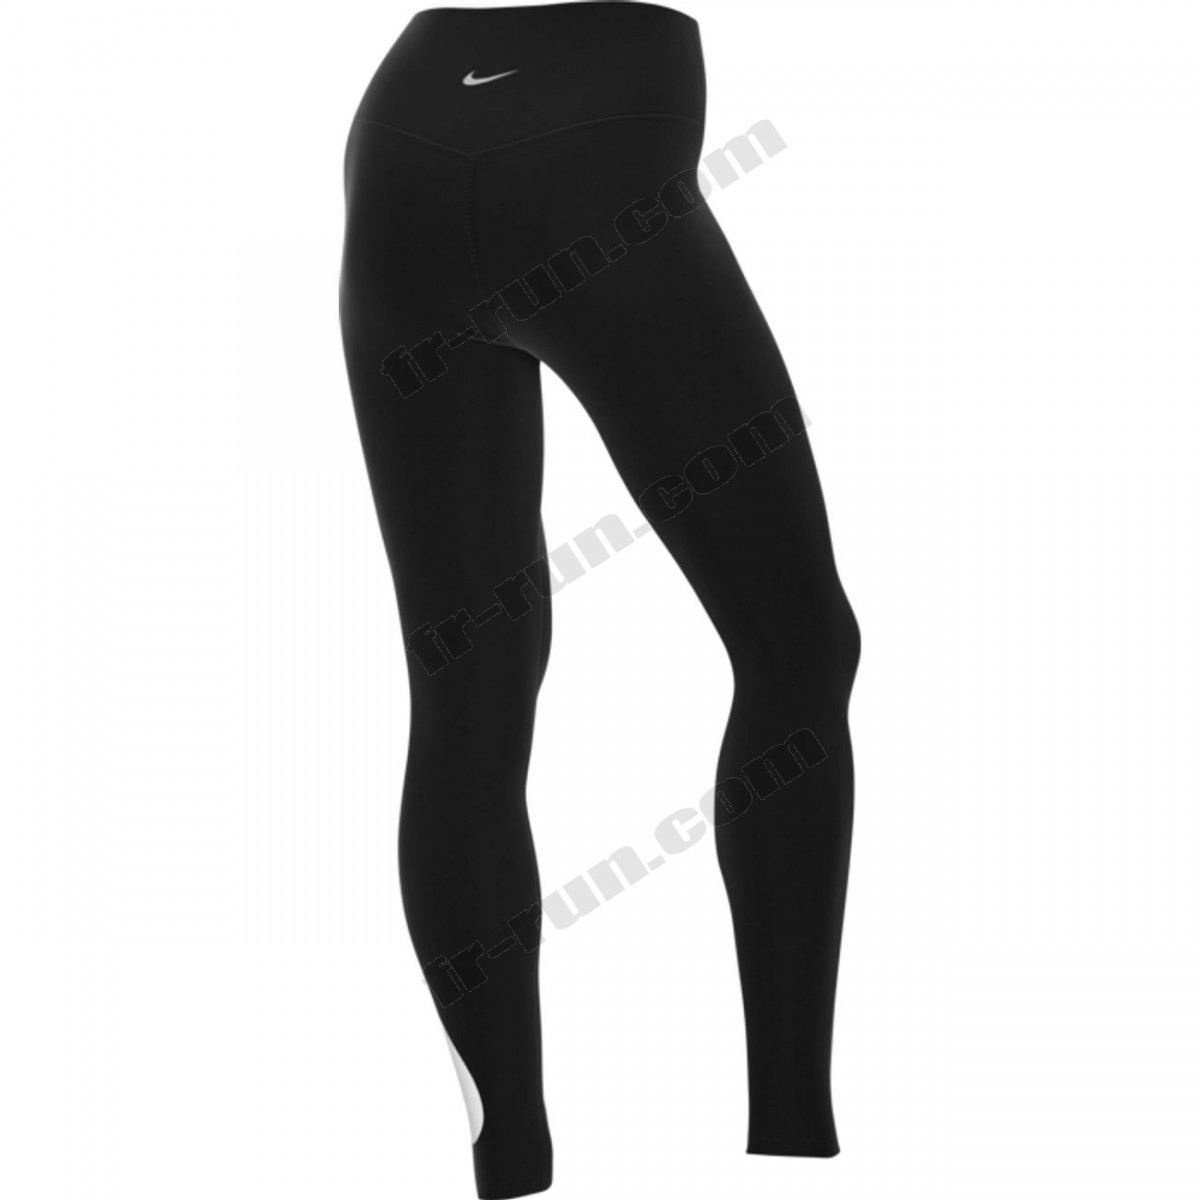 Nike/LEGGING running femme NIKE SWOOSH 7/8 √ Nouveau style √ Soldes - -1